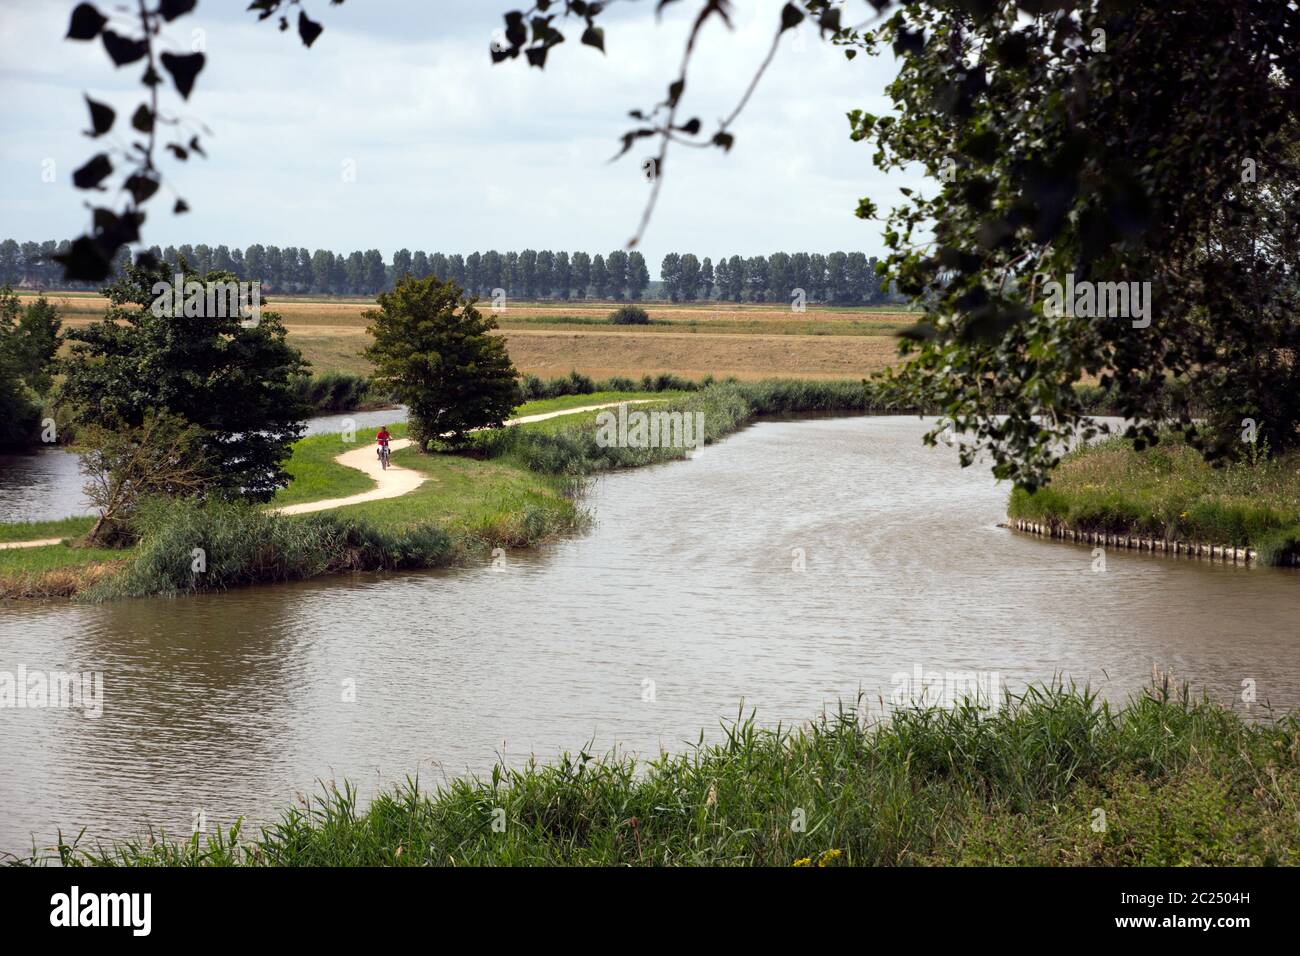 typisch Holländische Landschaft mit Radweg und Kanal, Sluis, Zeeland, Niederlande Stock Photo